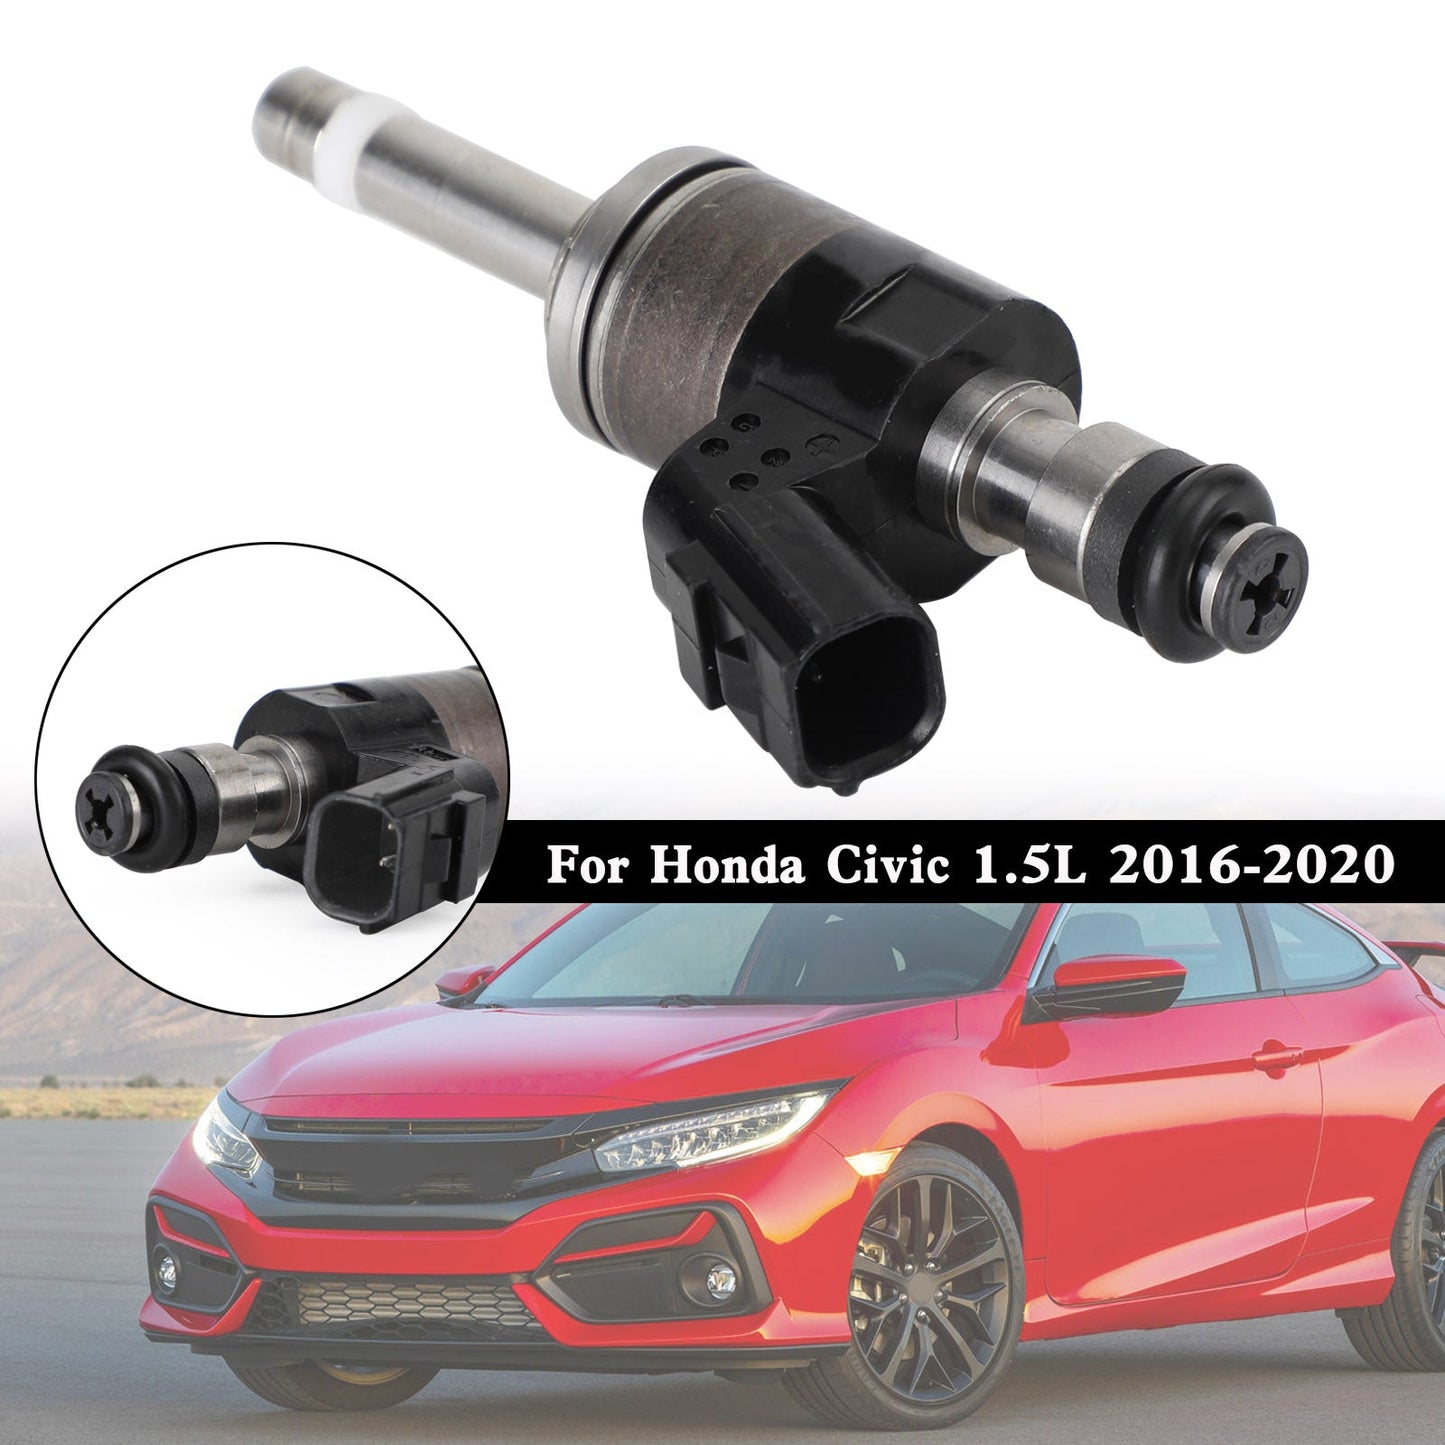 Honda Civic 1.5L 2016-2020 16010-59B-305 1PCS Fuel Injector 16010-59B-315